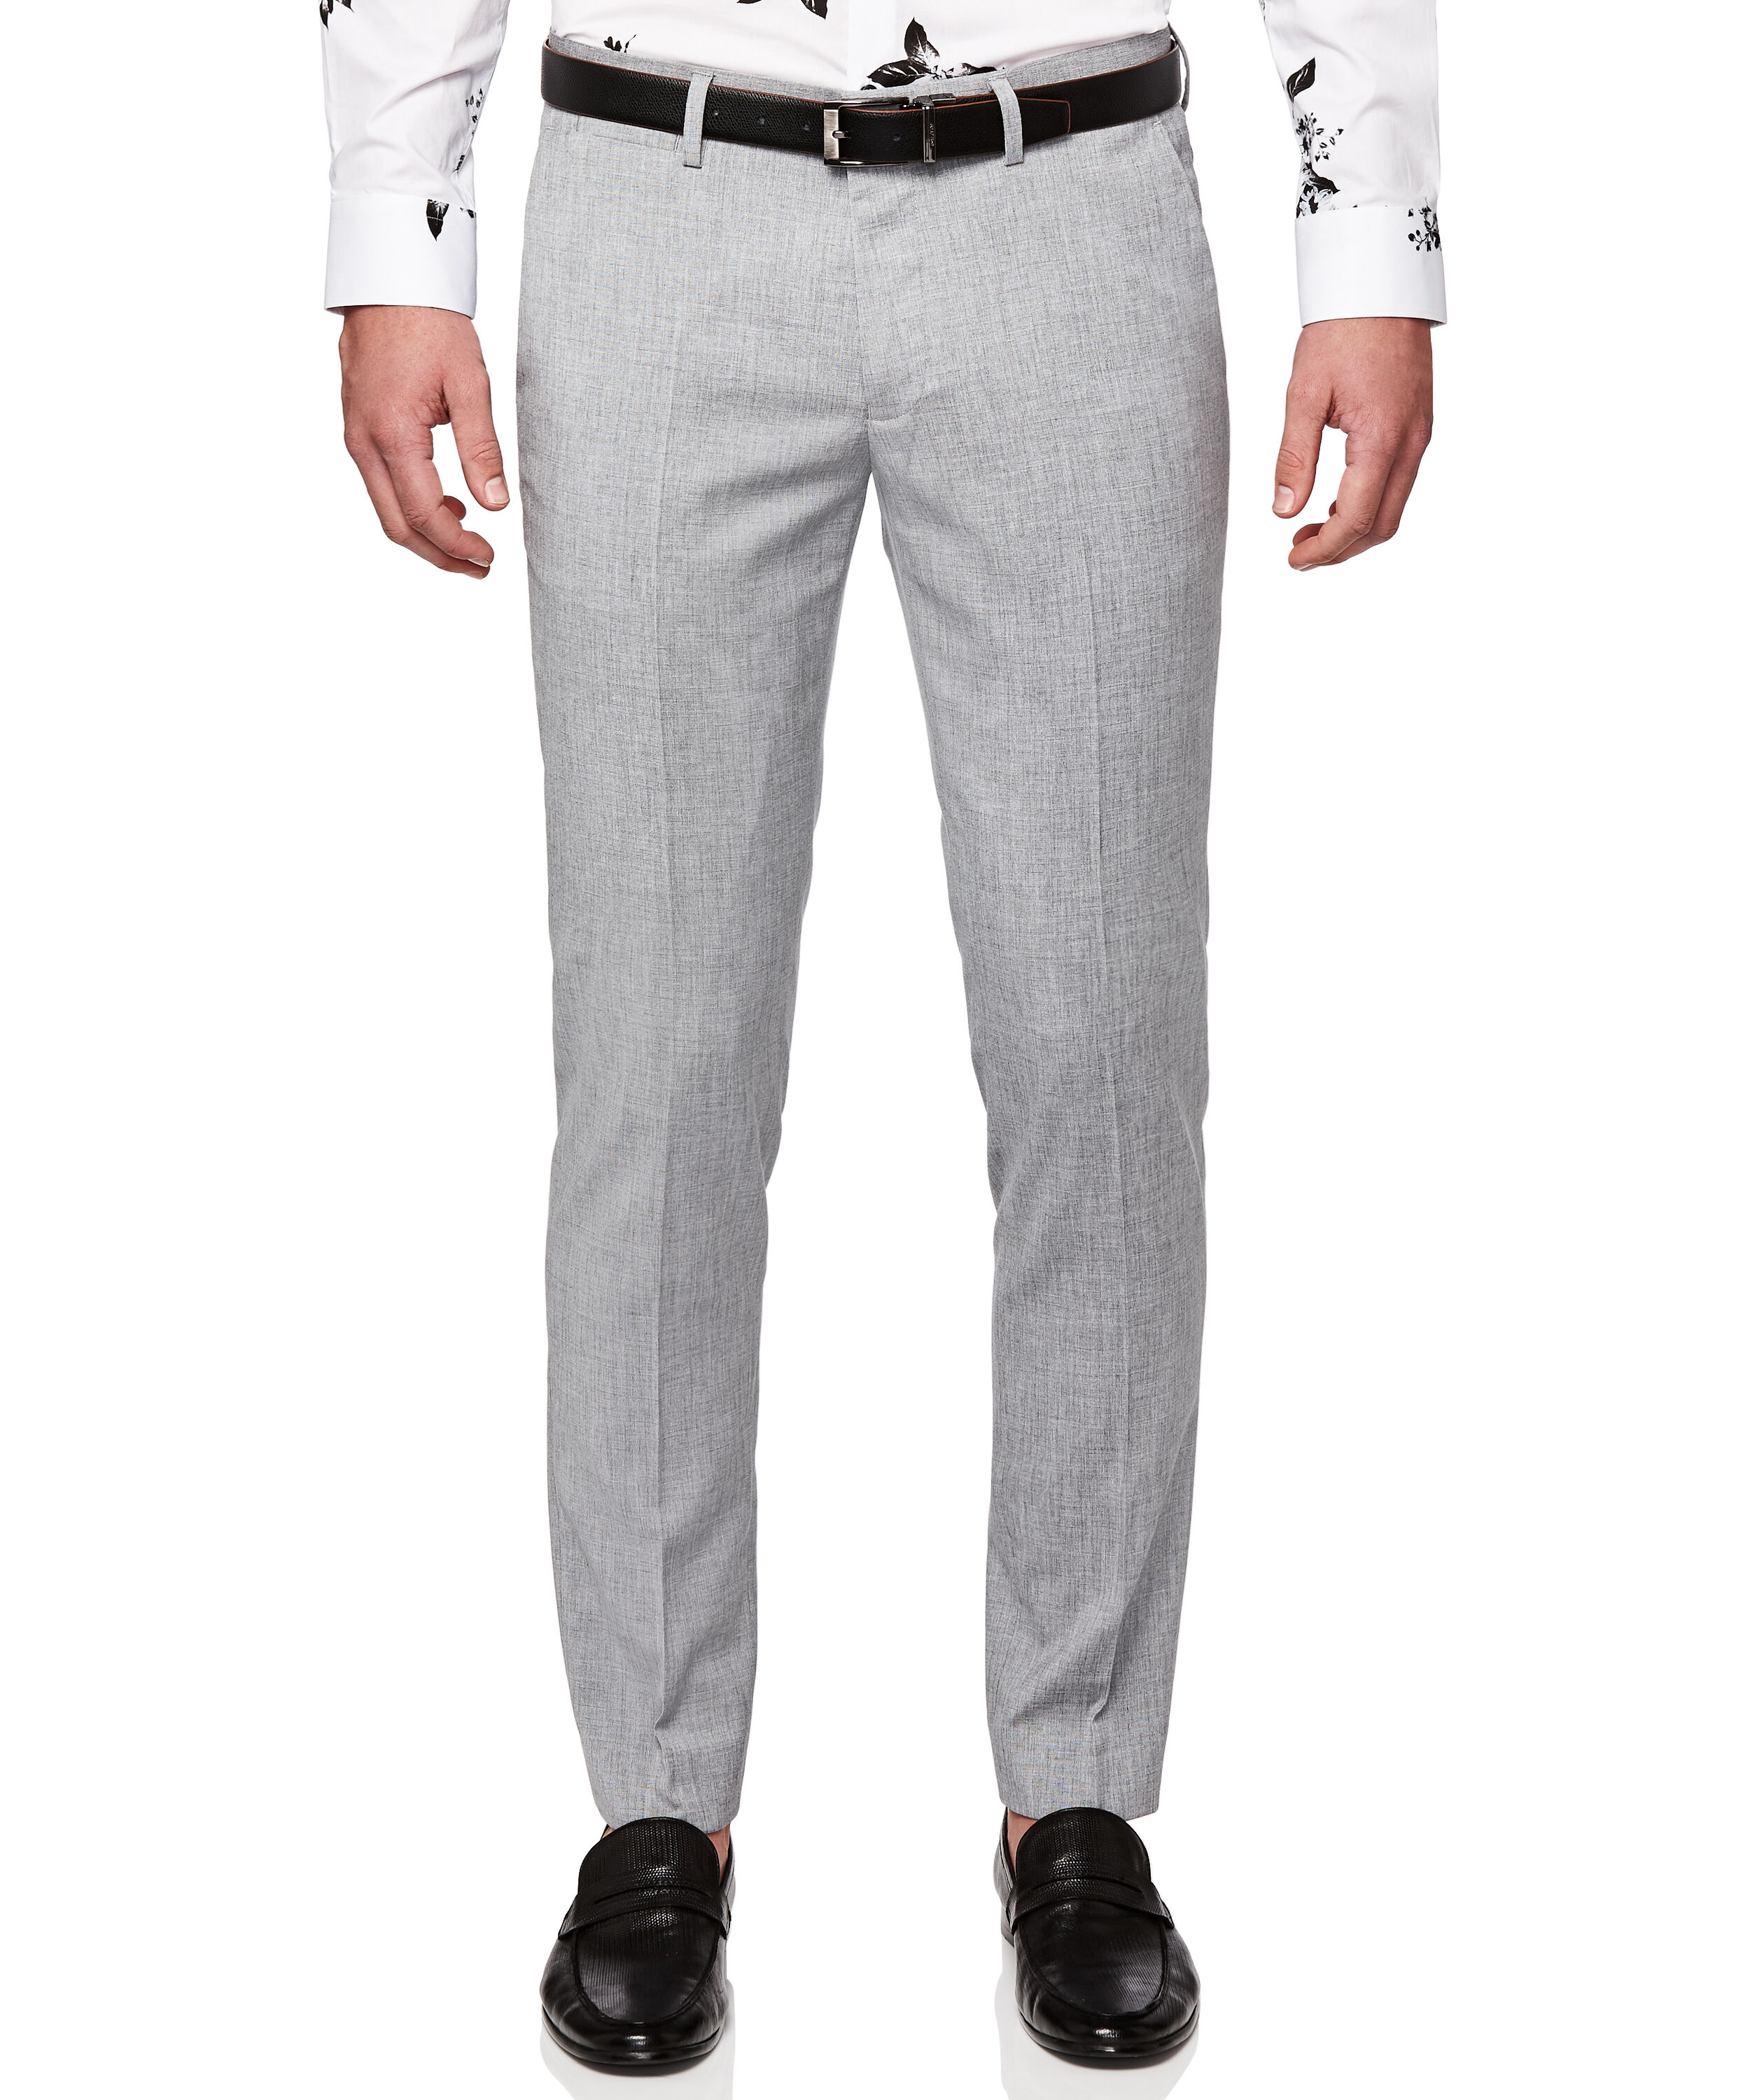 Lansdown - Light Grey - Modern Fit Suit Pants, Suit Pants